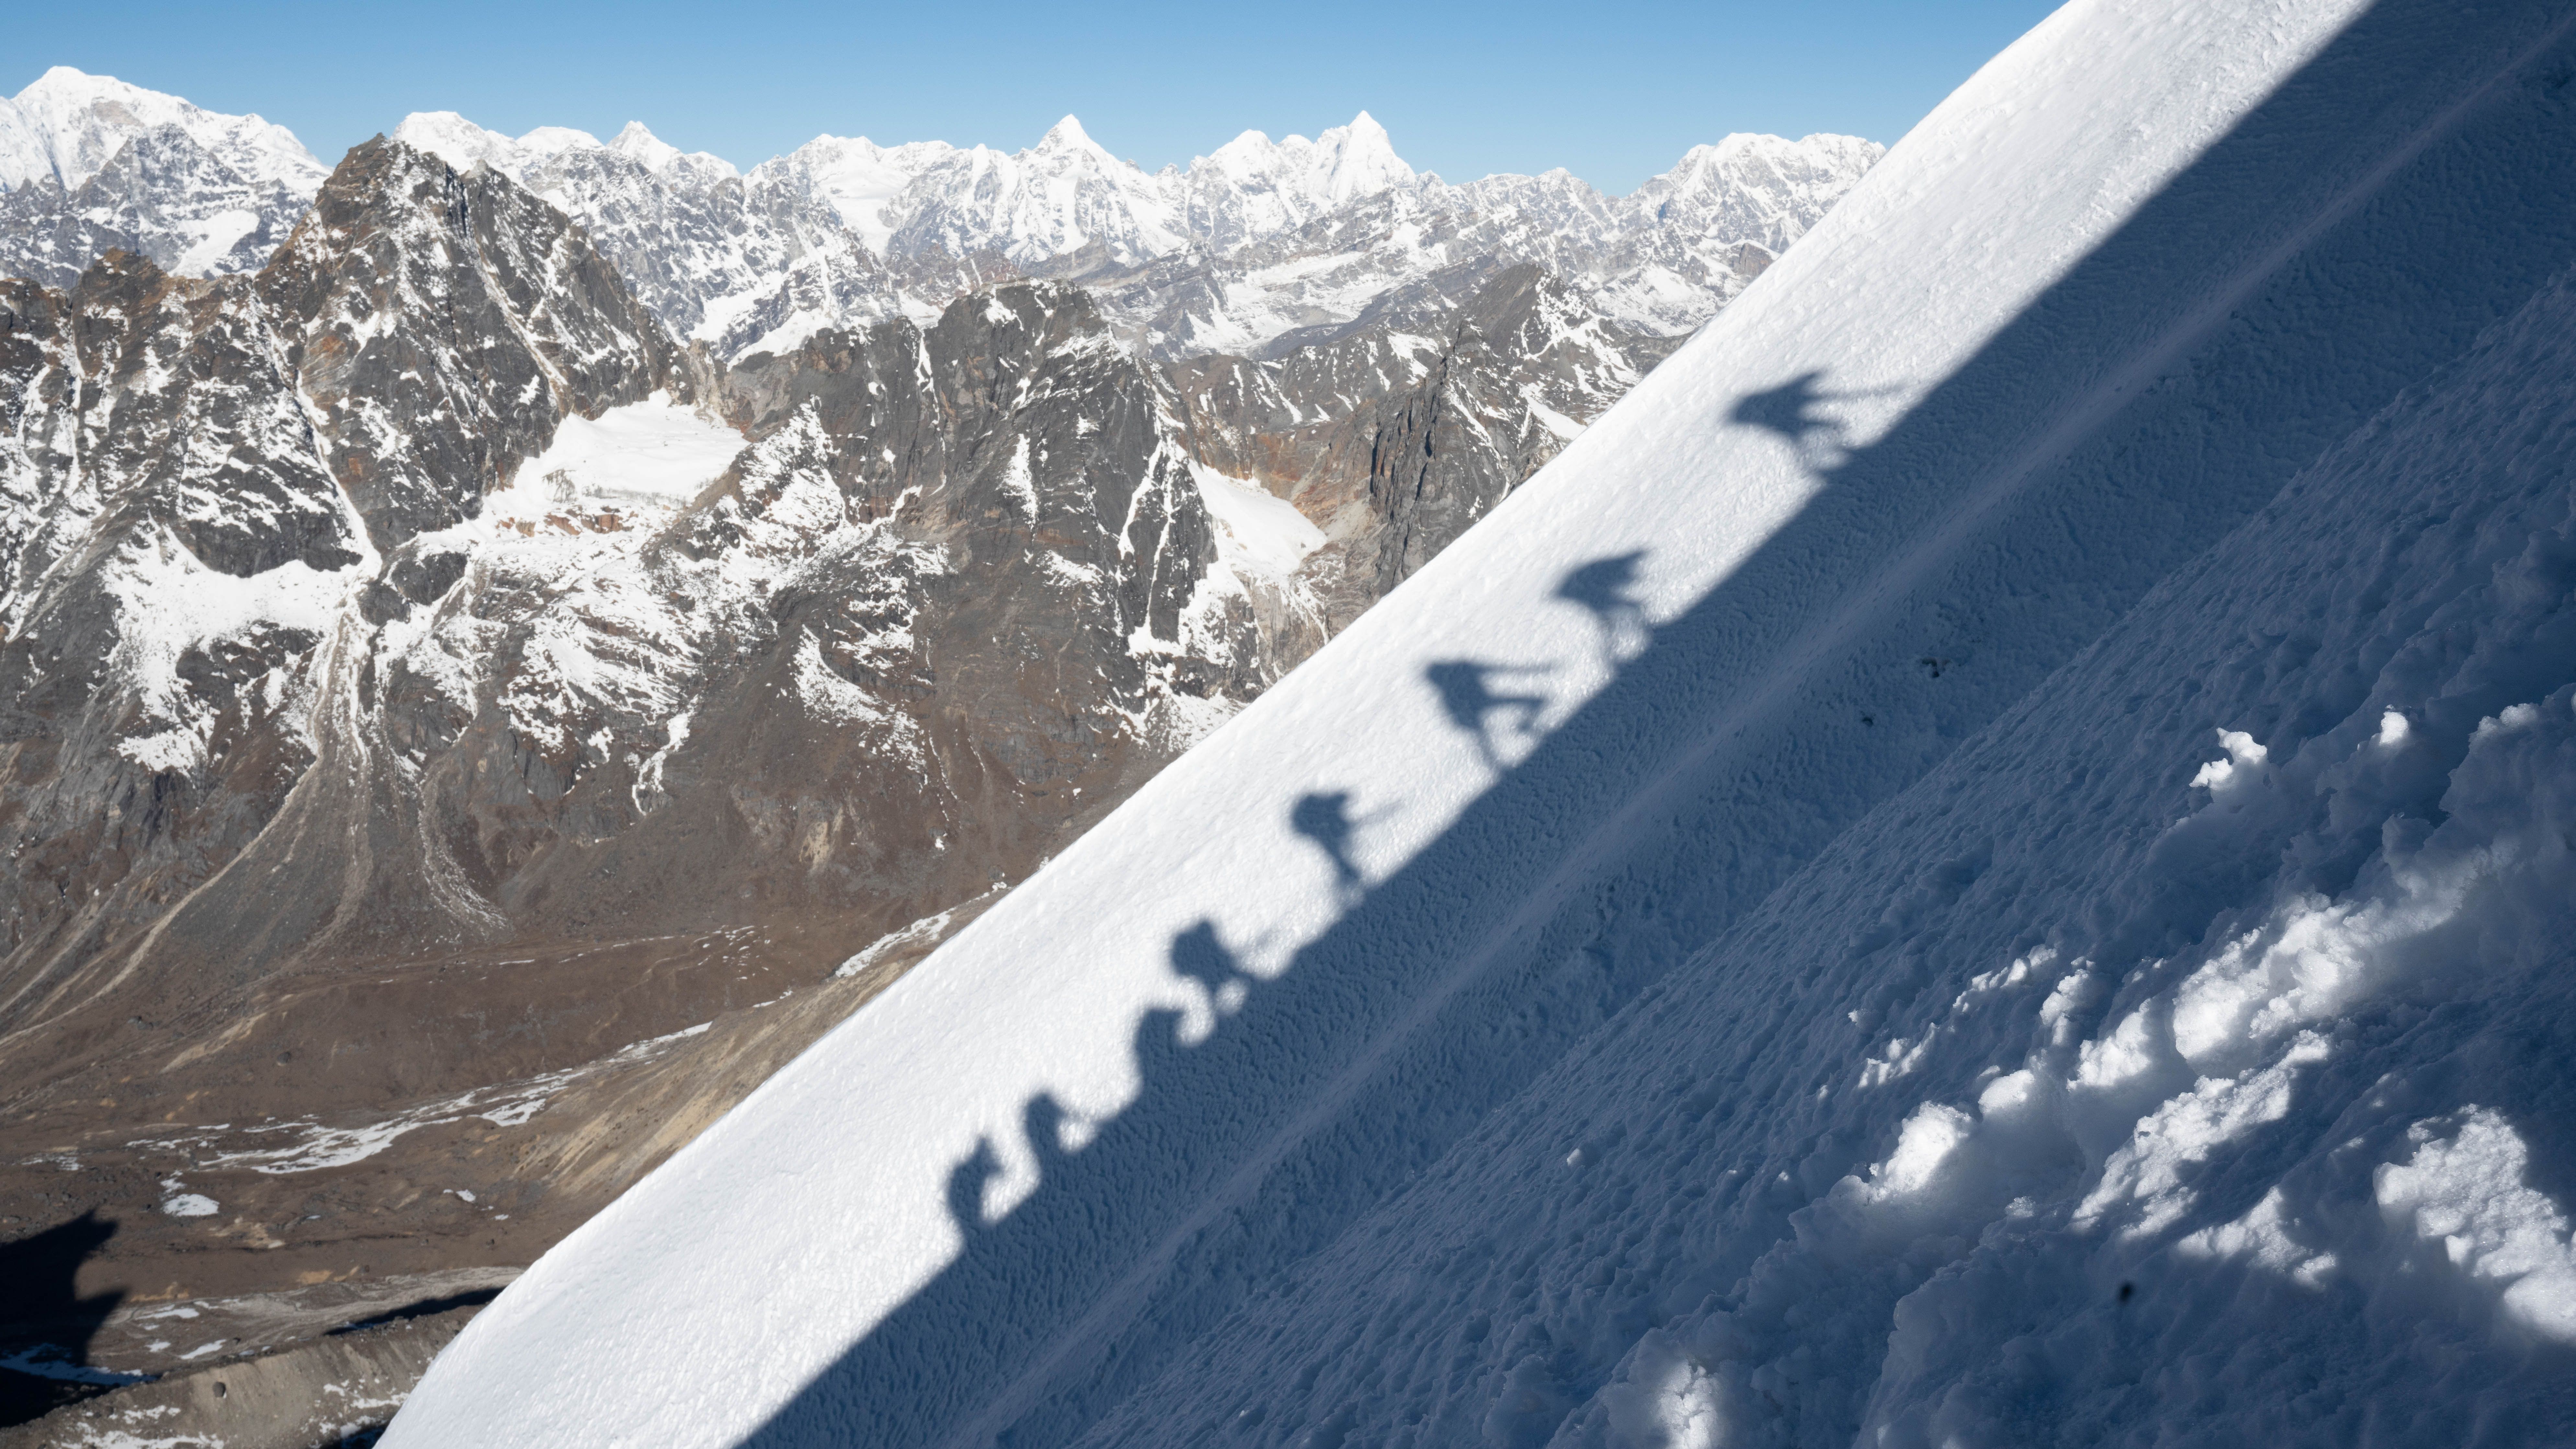 Évek múlva mászhatatlanná válhat az Everest